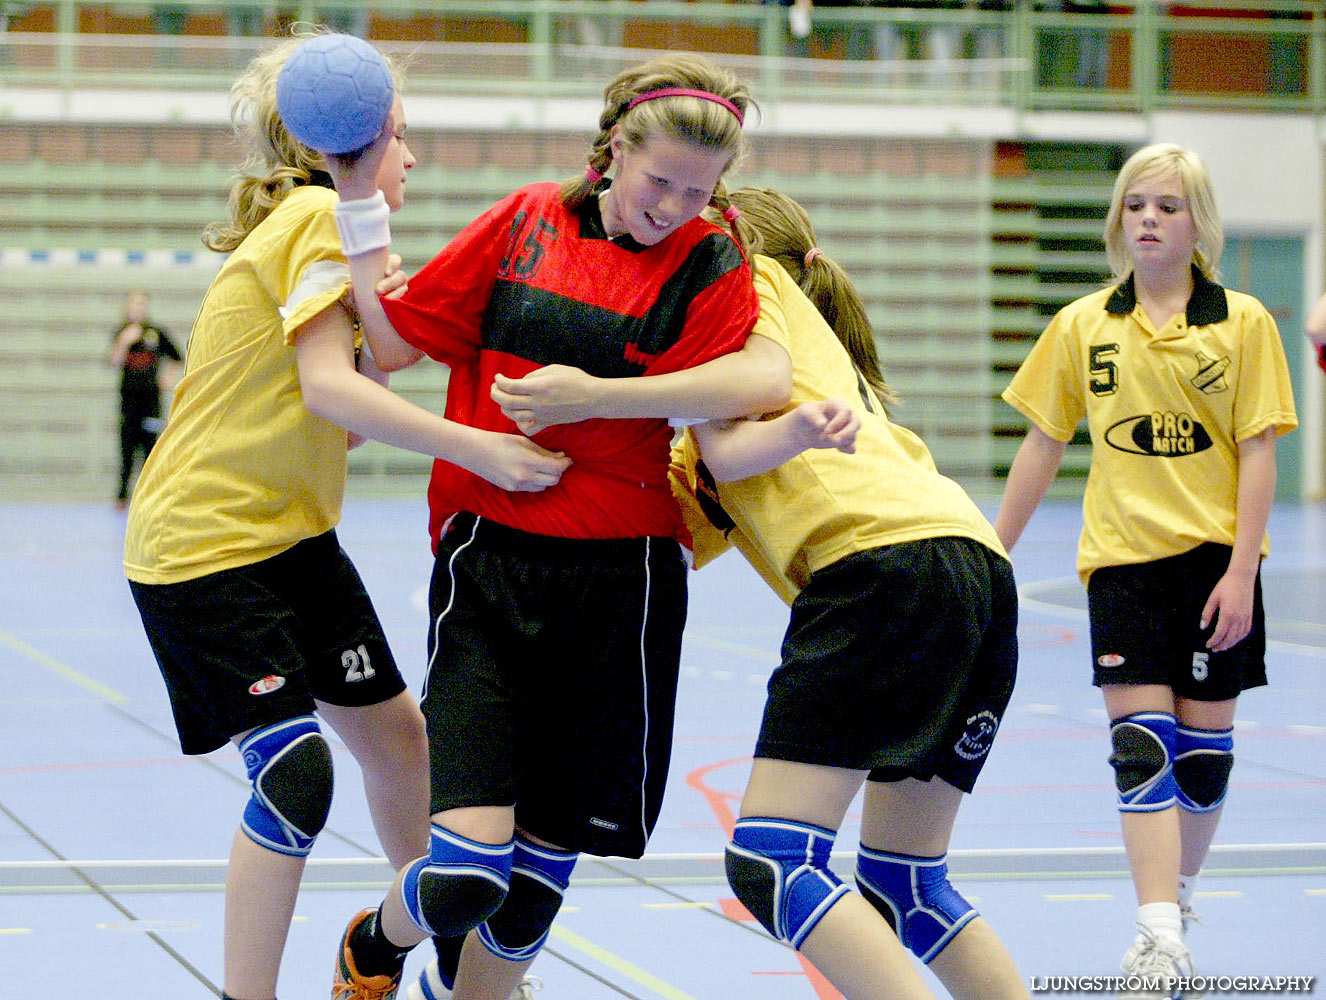 Skadevi Handbollscup 2005 Fredag,mix,Arena Skövde,Skövde,Sverige,Handboll,,2005,141377